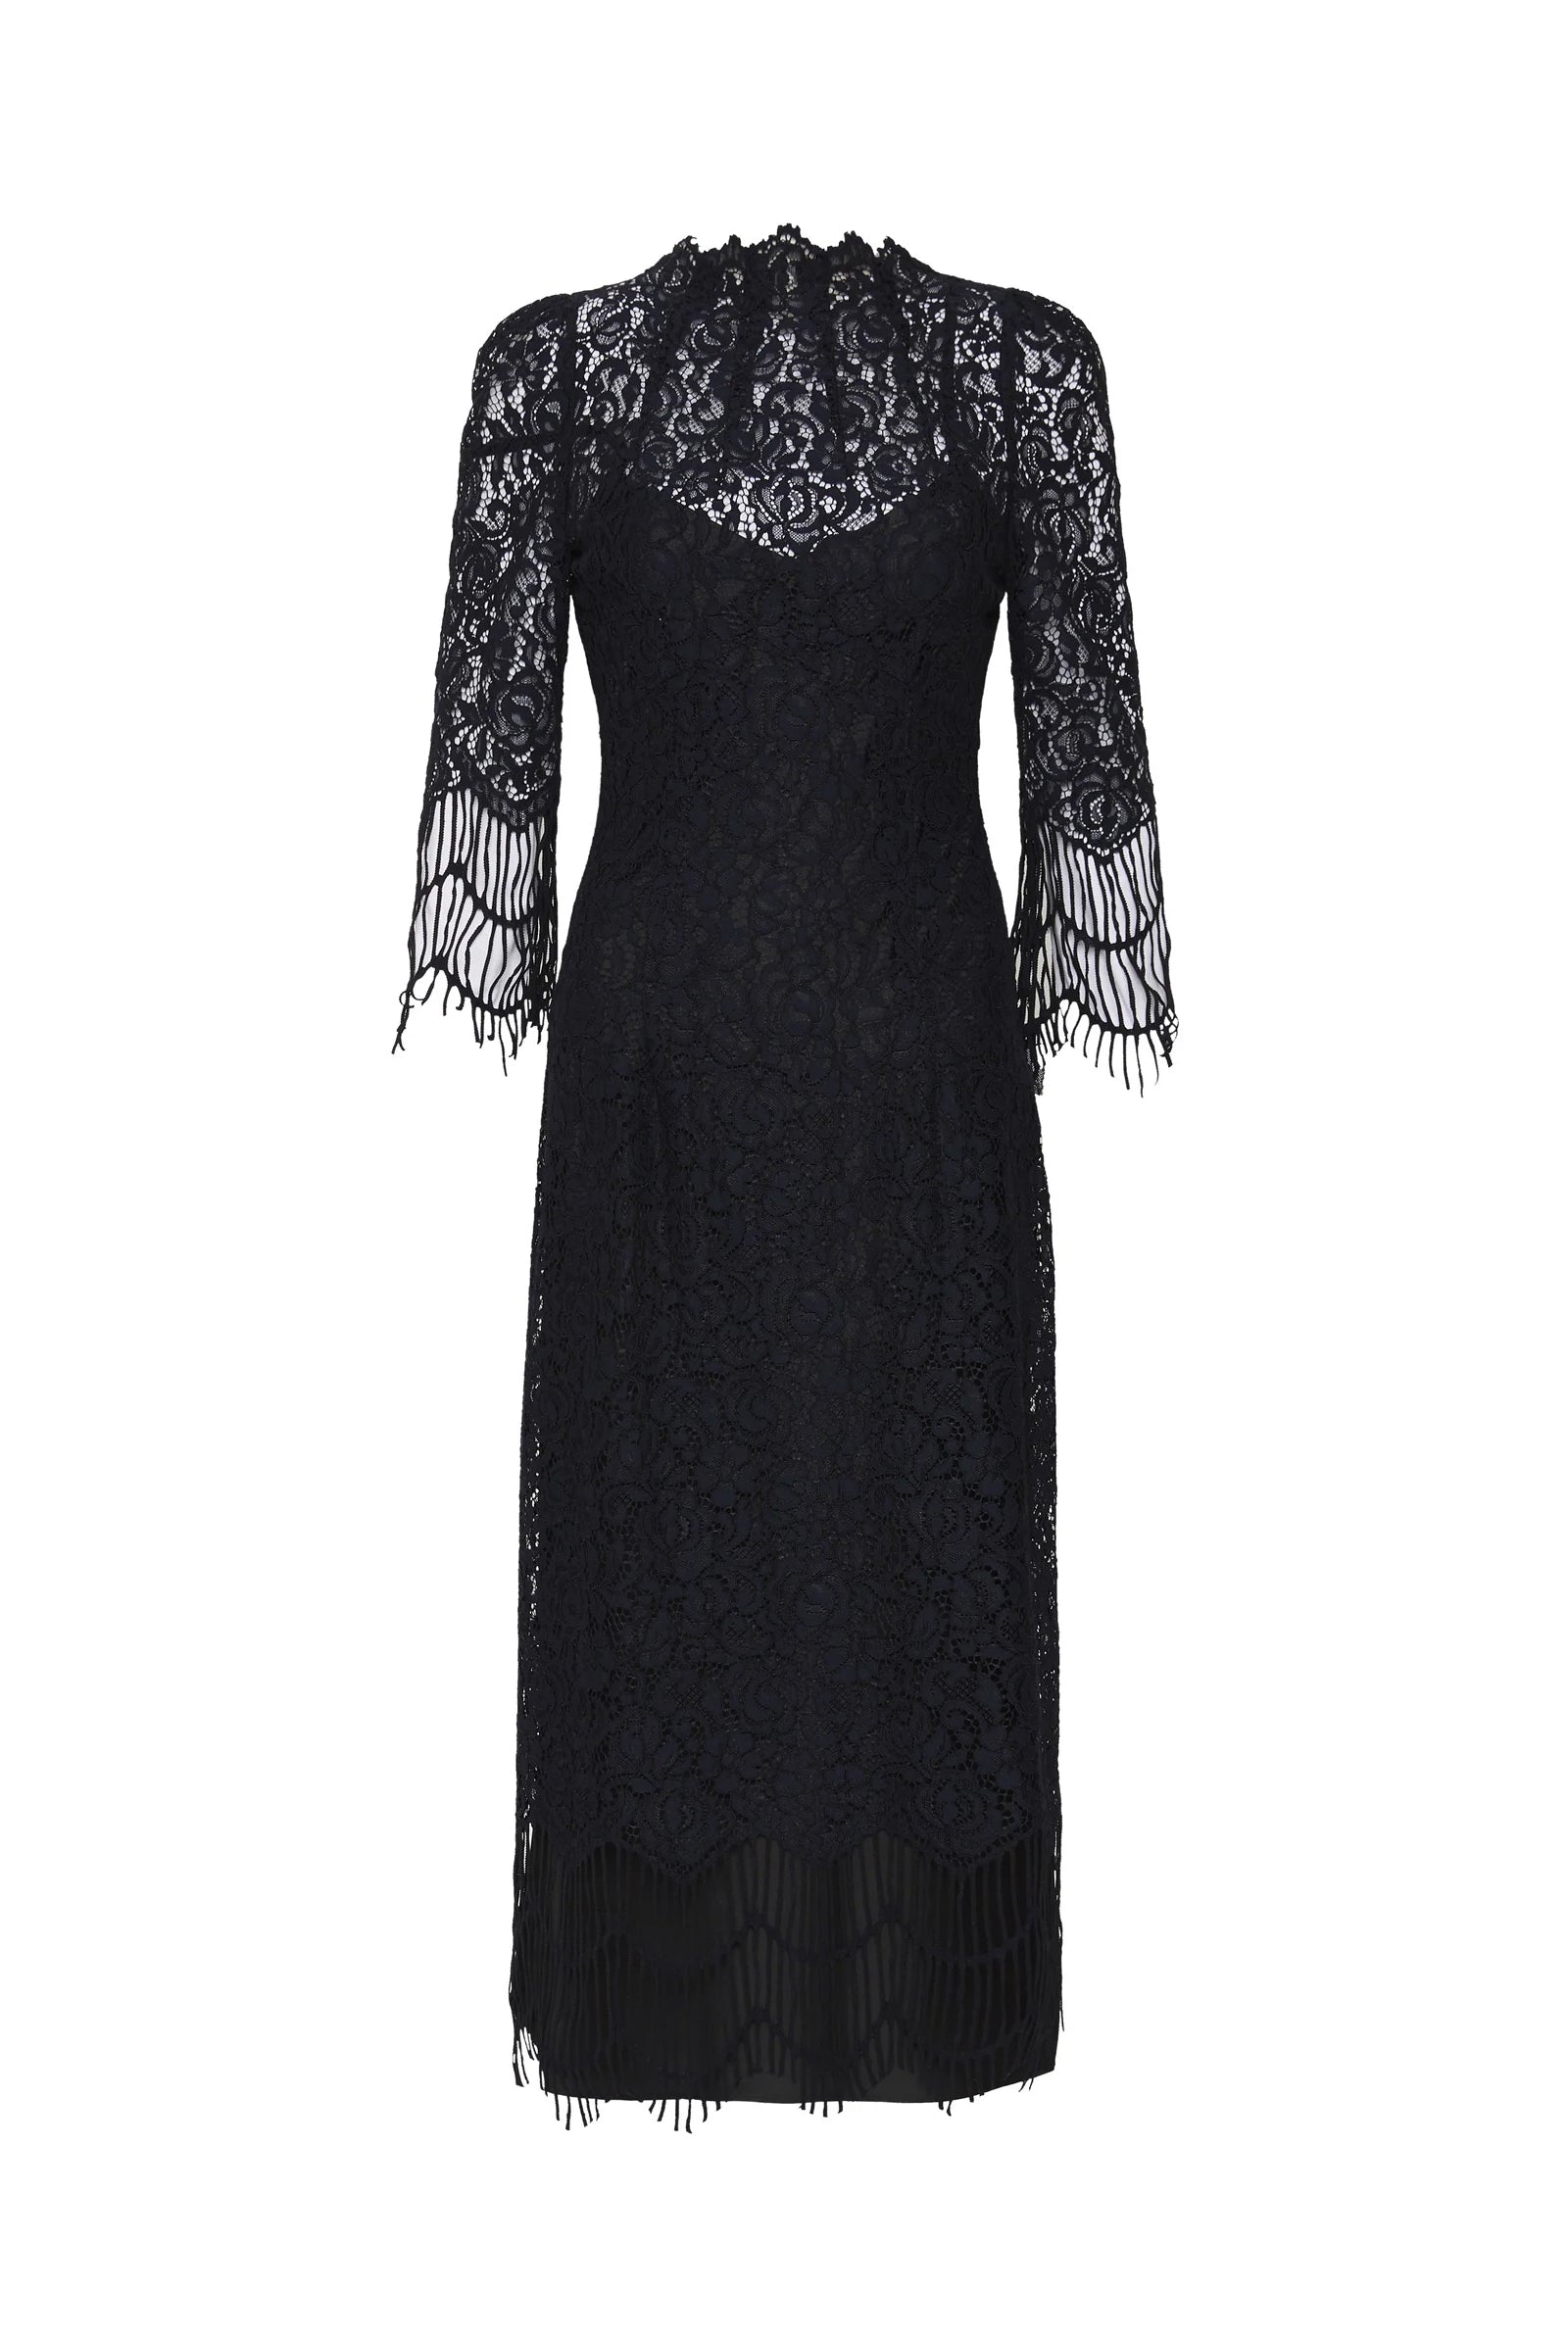 MOSS & SPY Sofia Dress Ink - Magpie Style